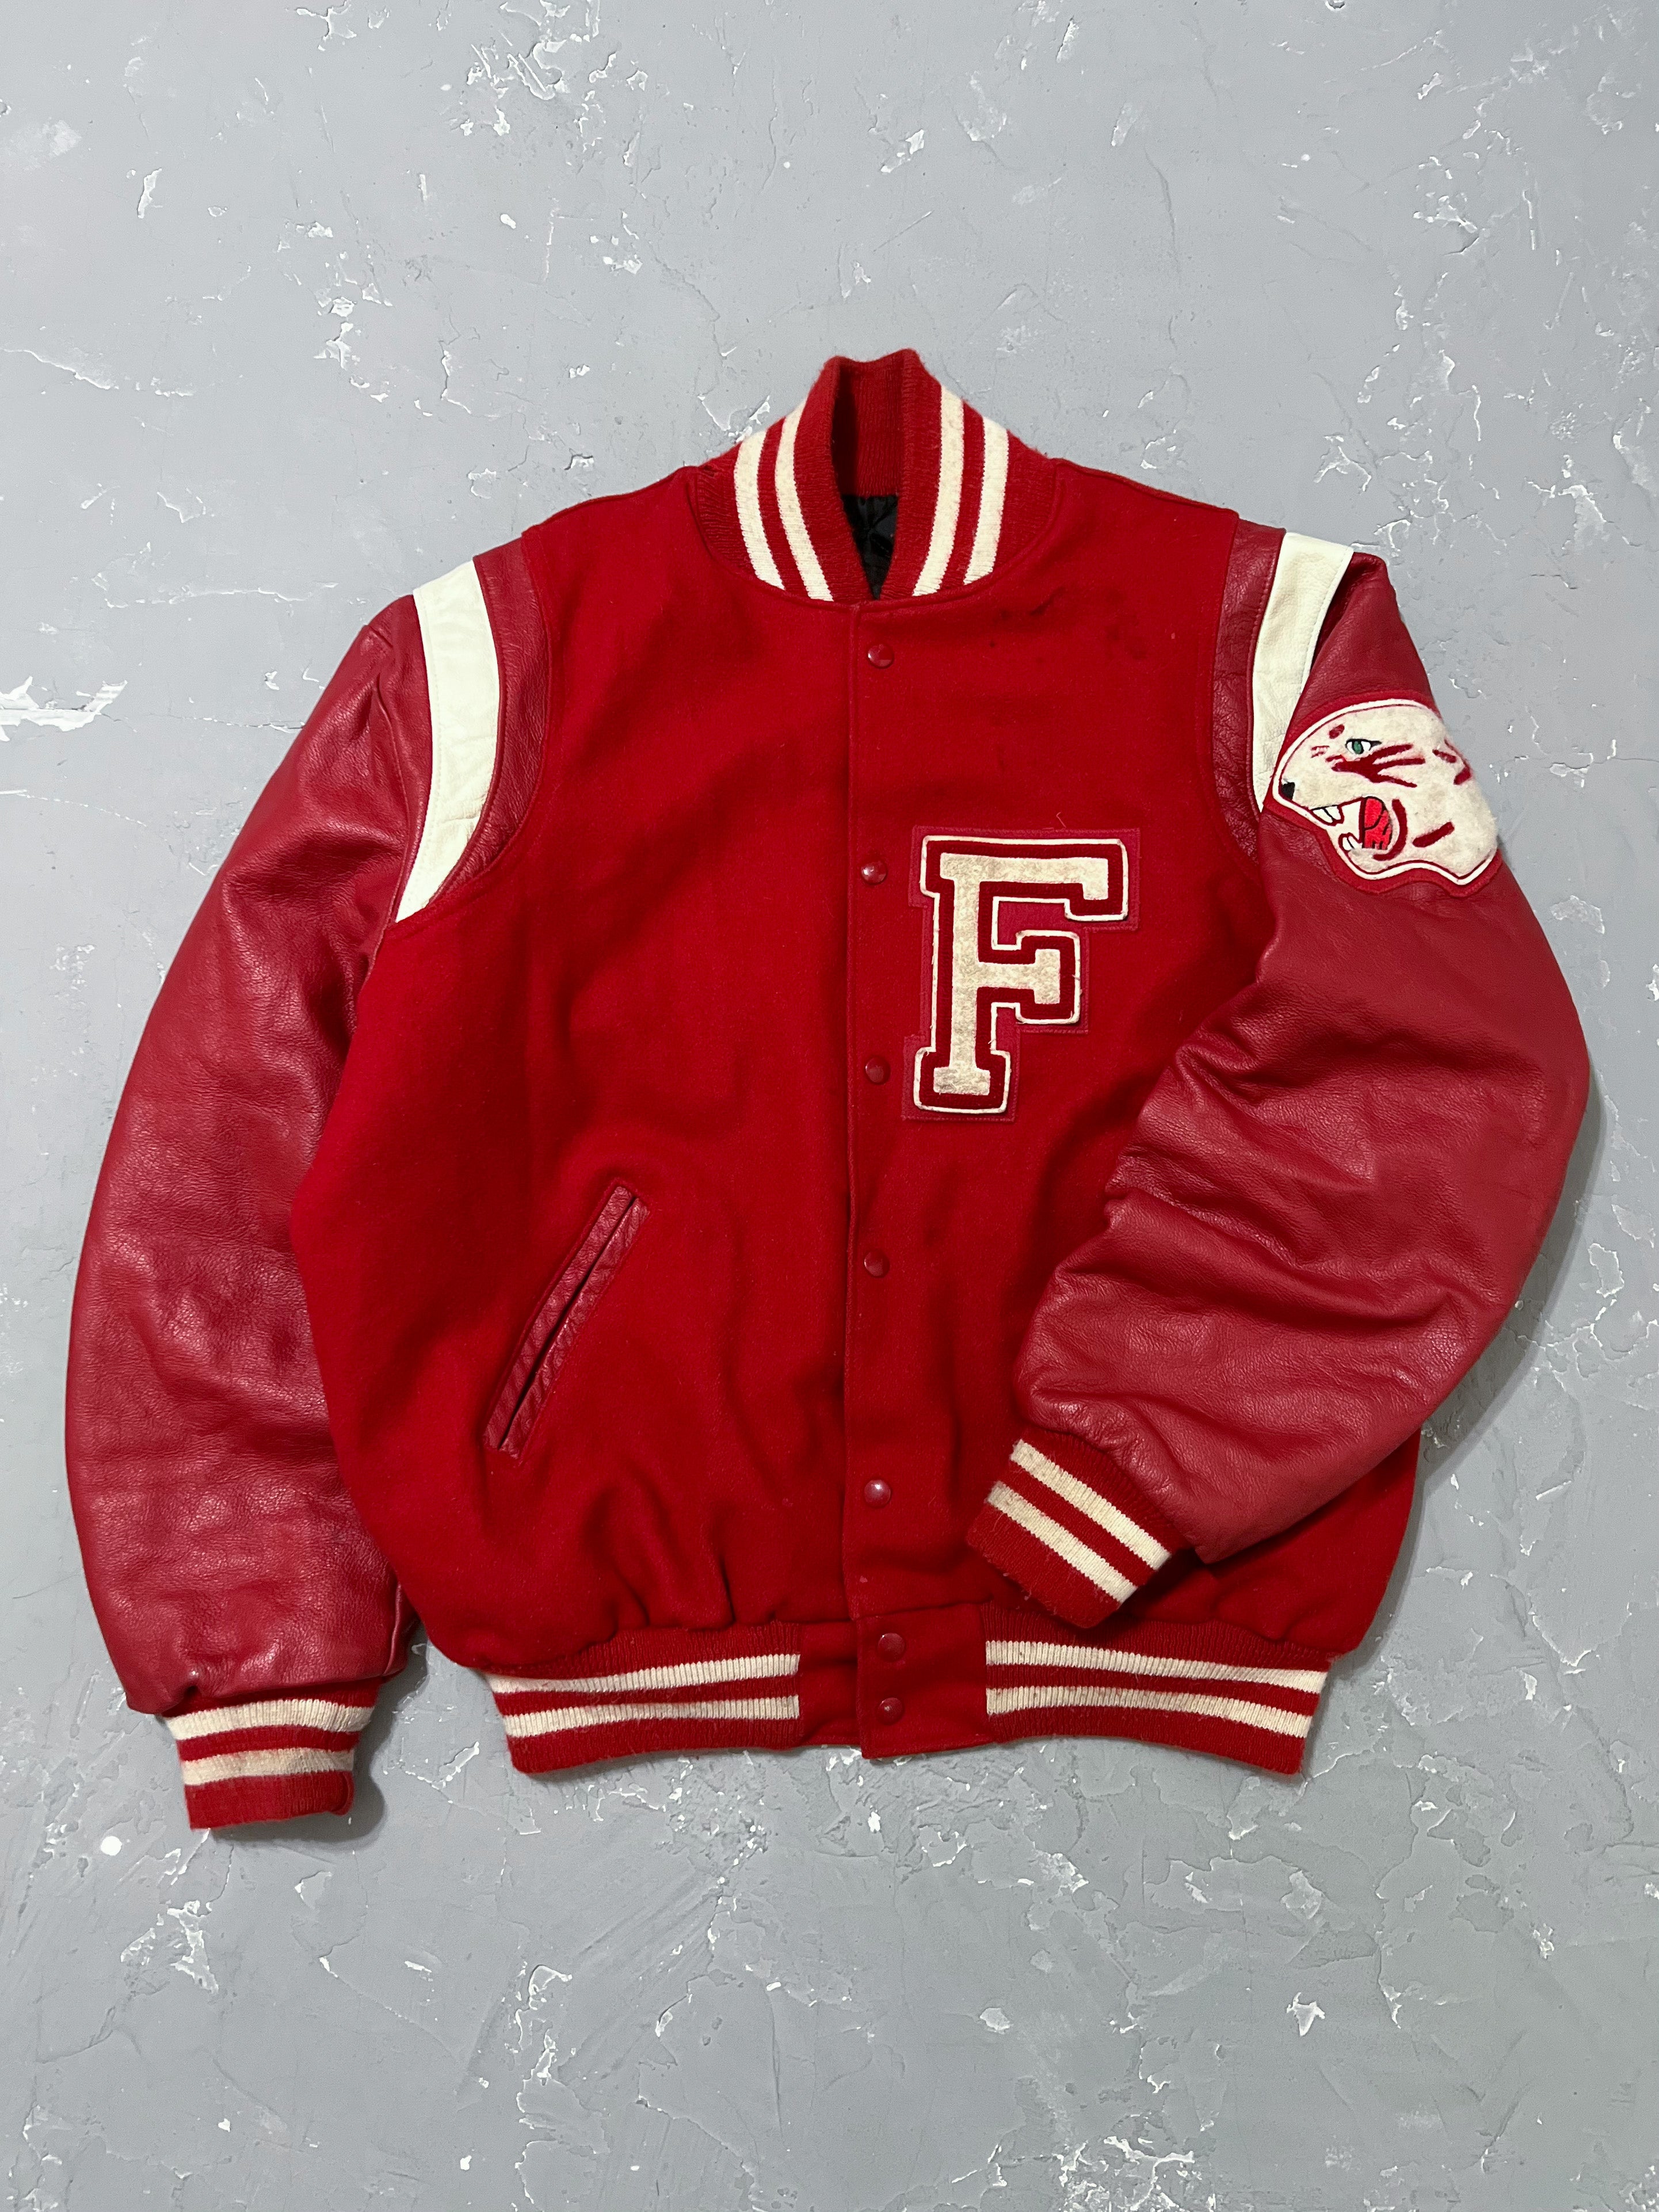 1990s Cherry Red “F” Varsity Jacket [XL]